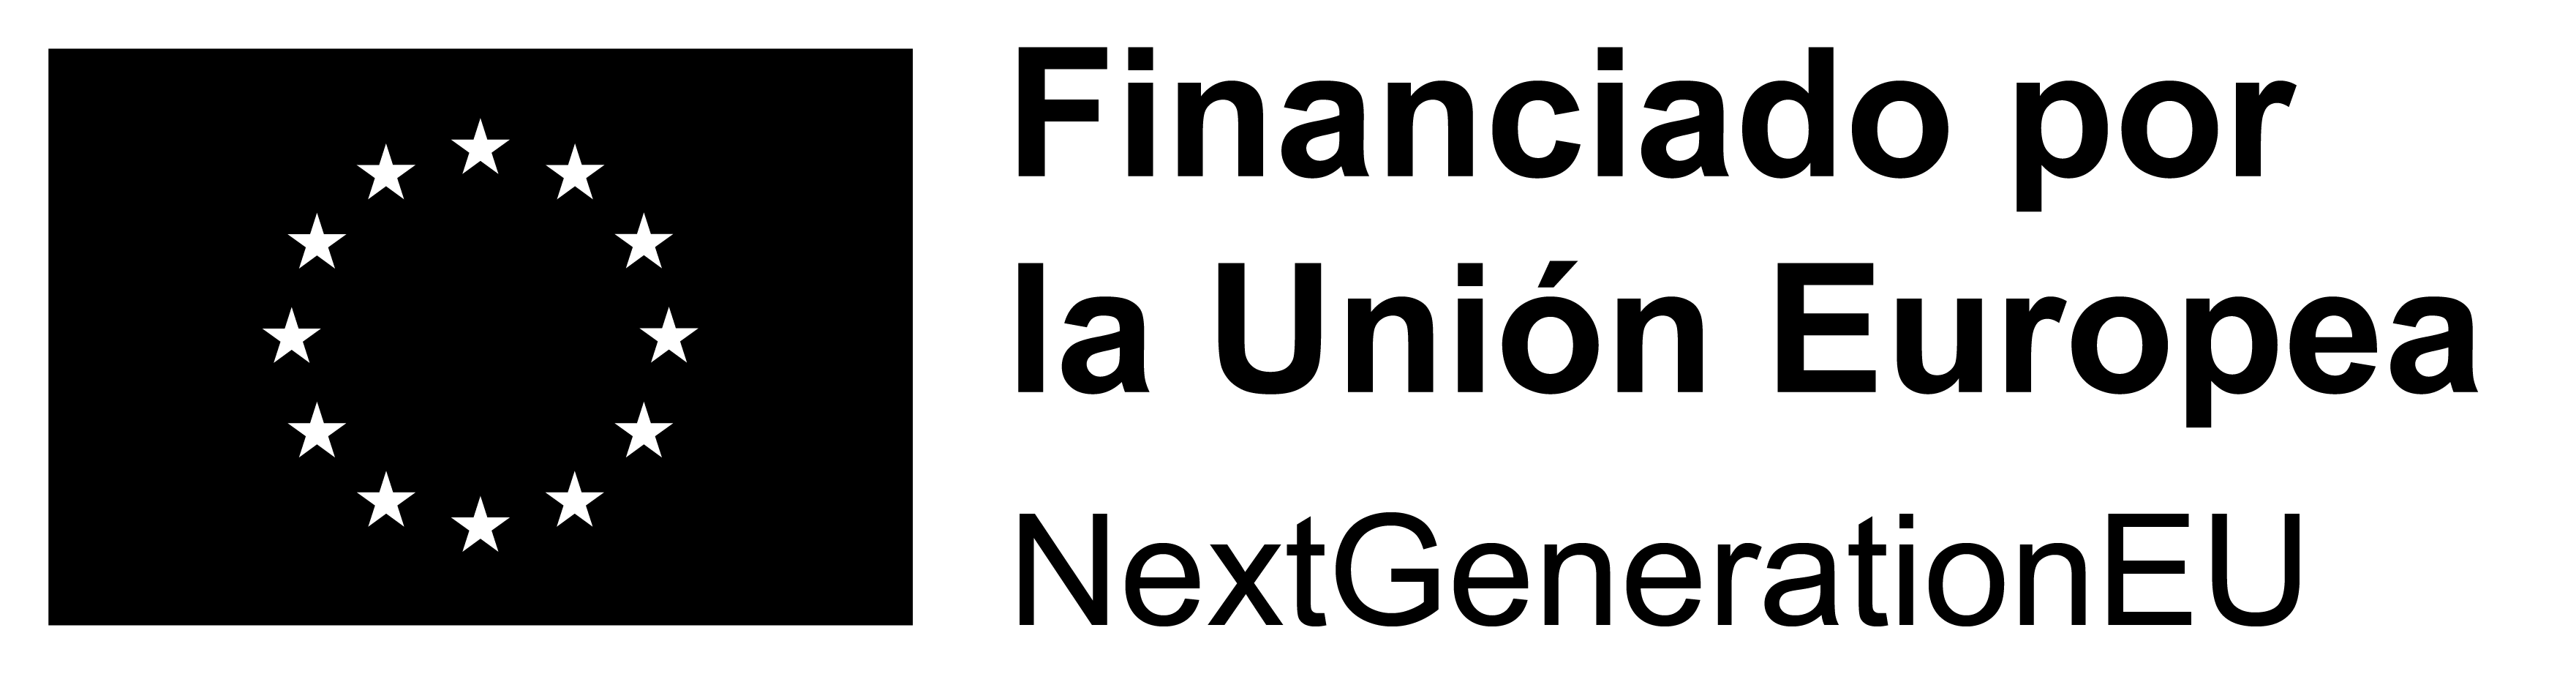 ES_Financiado_por_la_Unión_Europea_RGB_BLACK